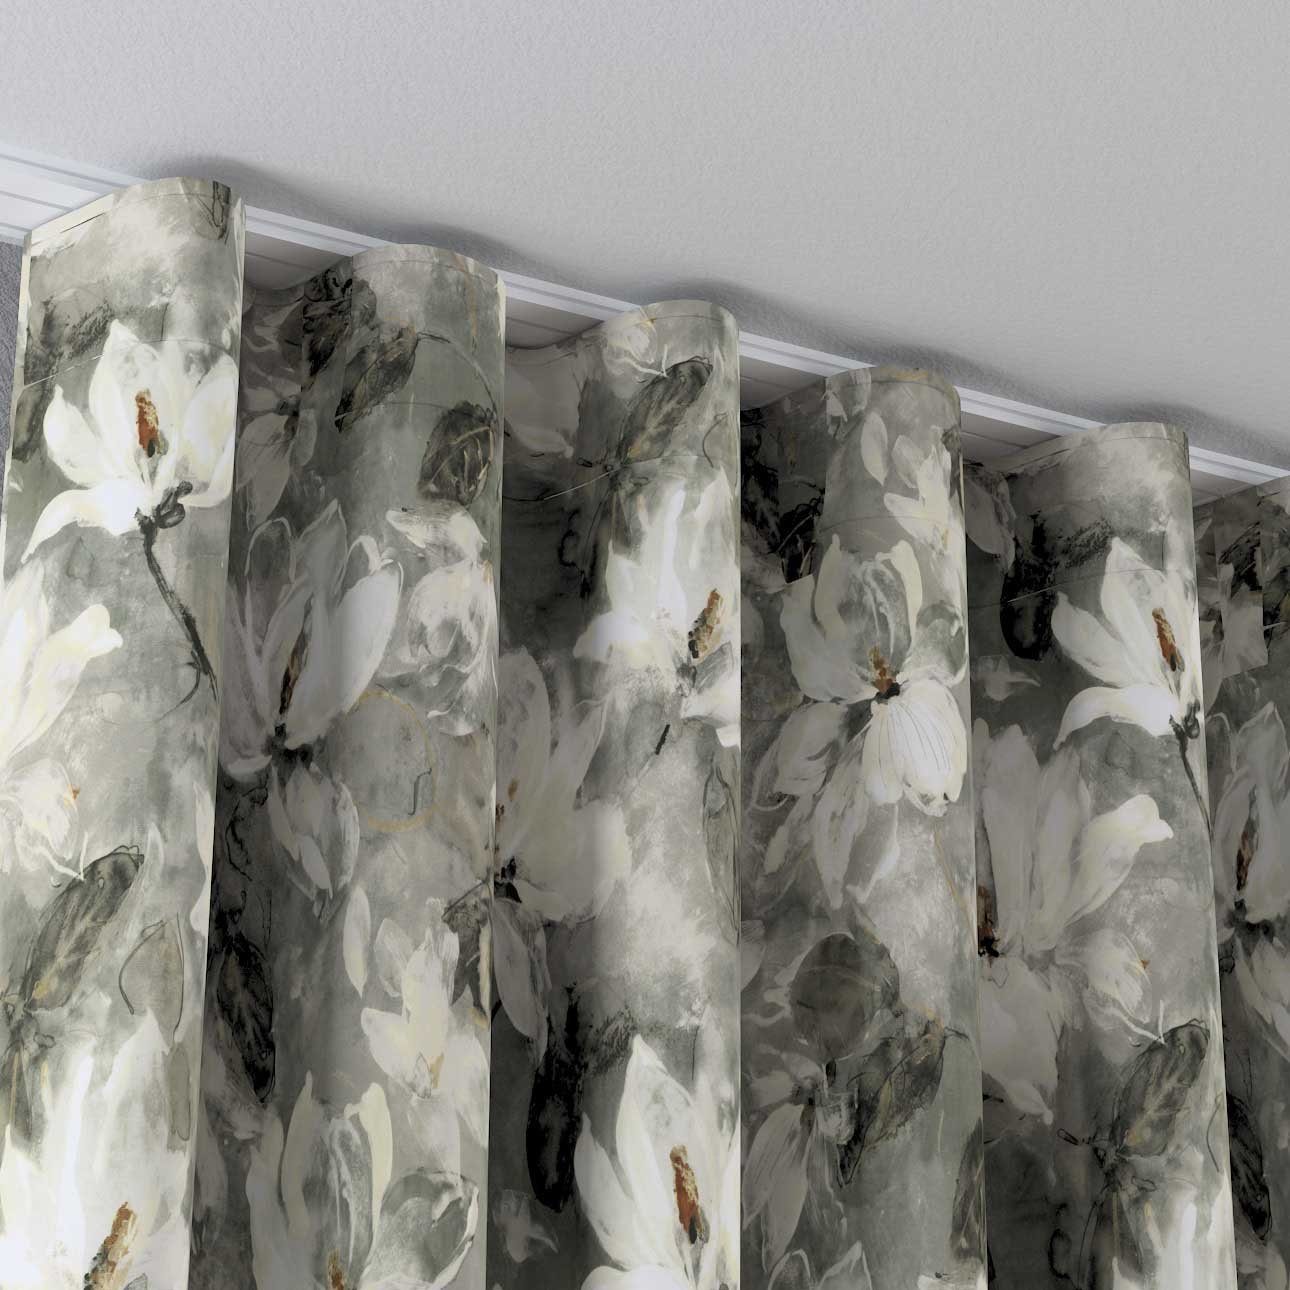 x cm, 65 Dekoria Vorhang Wellenvorhang Velvet, 100 grau-weiß